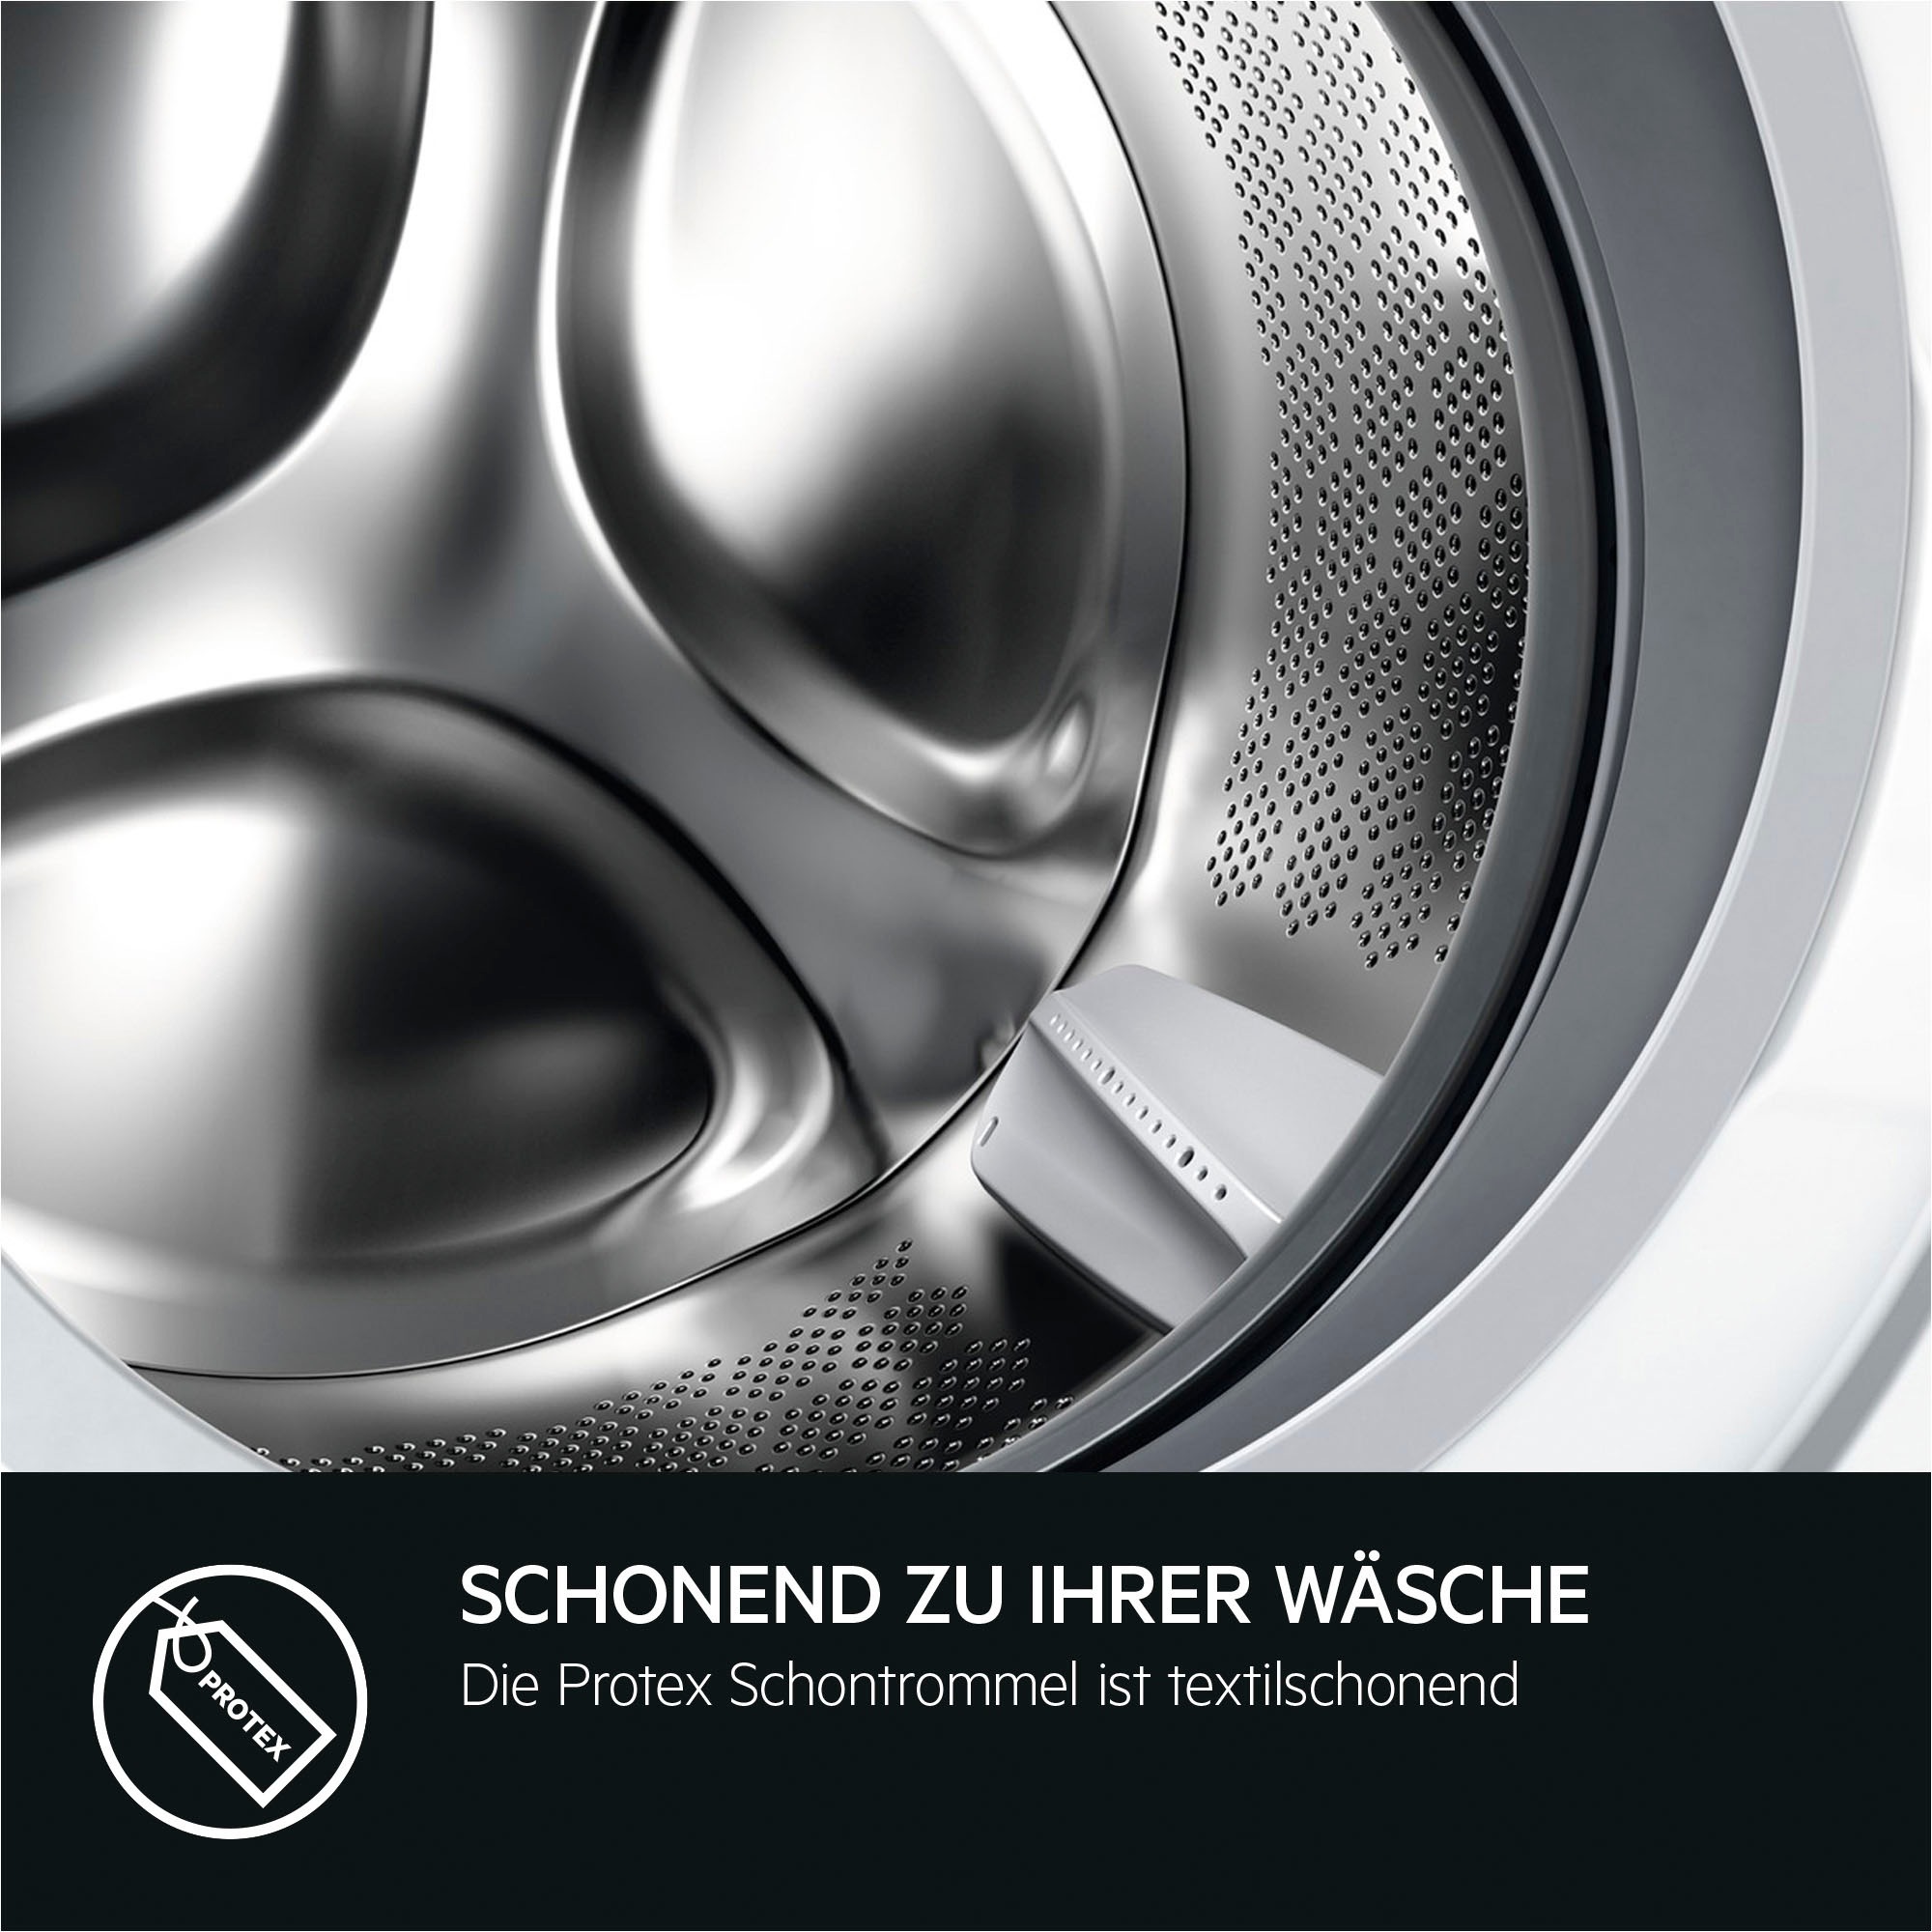 AEG Waschmaschine, LR6D60490 914915144, 9 kg, 1400 U/min, ProSense® Mengenautomatik​ - spart bis 40% Zeit, Wasser und Energie